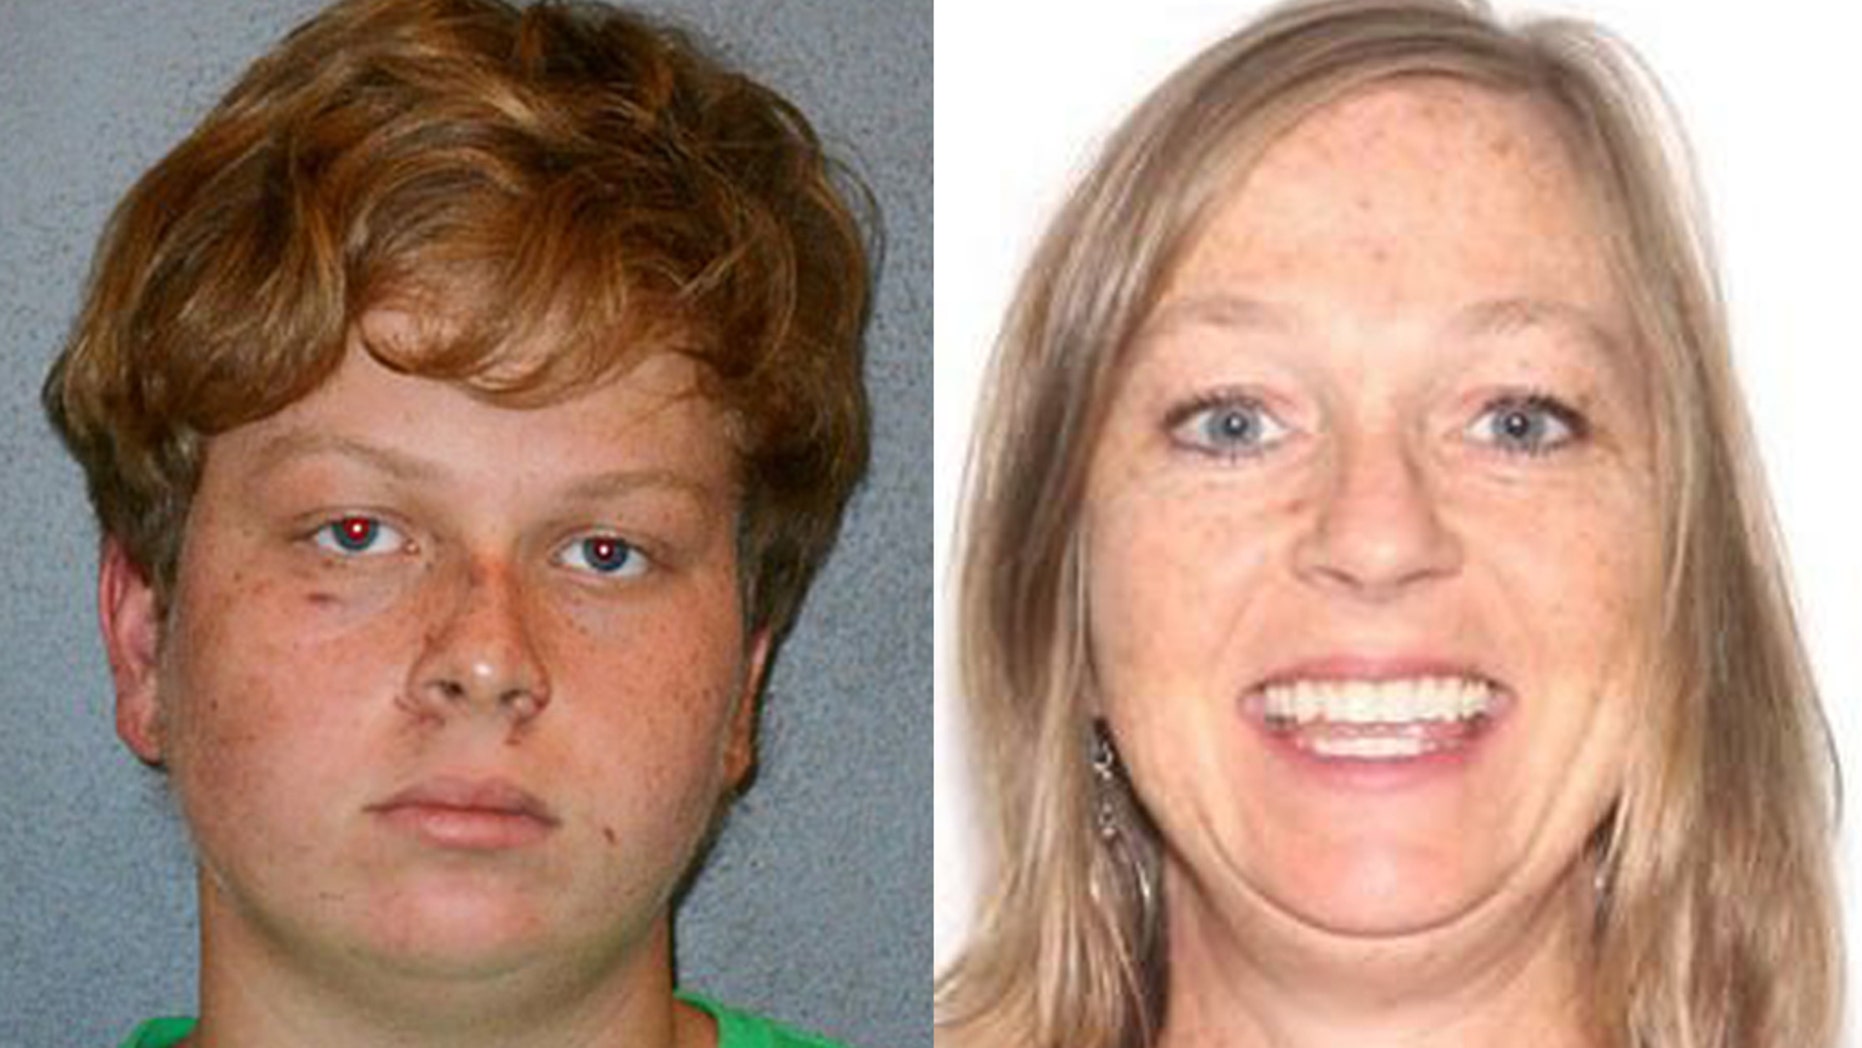 Gregory Ramos, 15 ans, a confessé avoir tué sa mère âgée de 46 ans, Gail Cleavenger, après s'être disputés à propos d'une mauvaise note jeudi soir à leur domicile de DeBary, en Floride. 